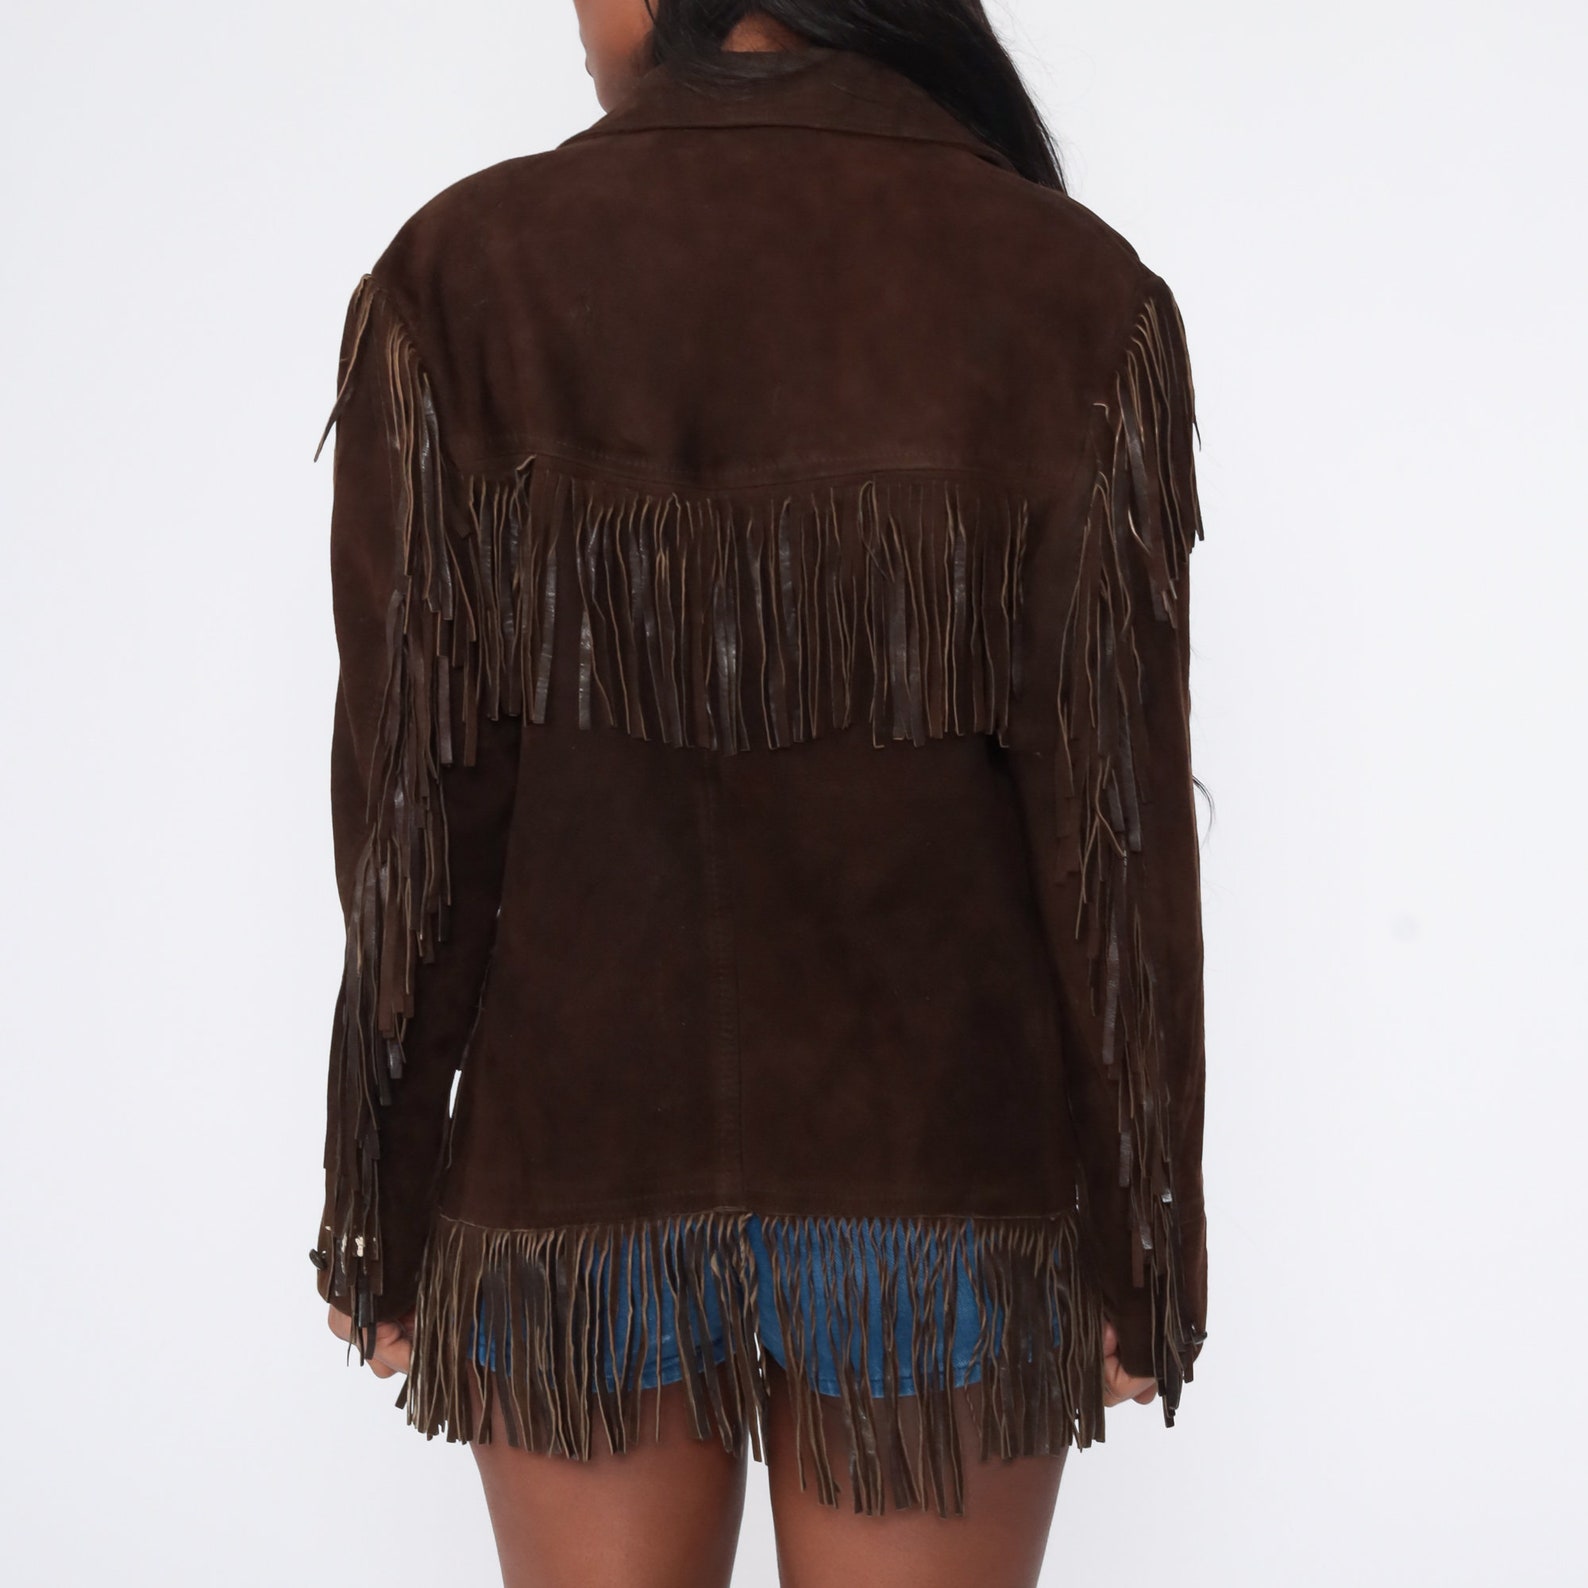 Fringe Leather Jacket 70s Boho Vintage Suede Southwest Jacket | Etsy